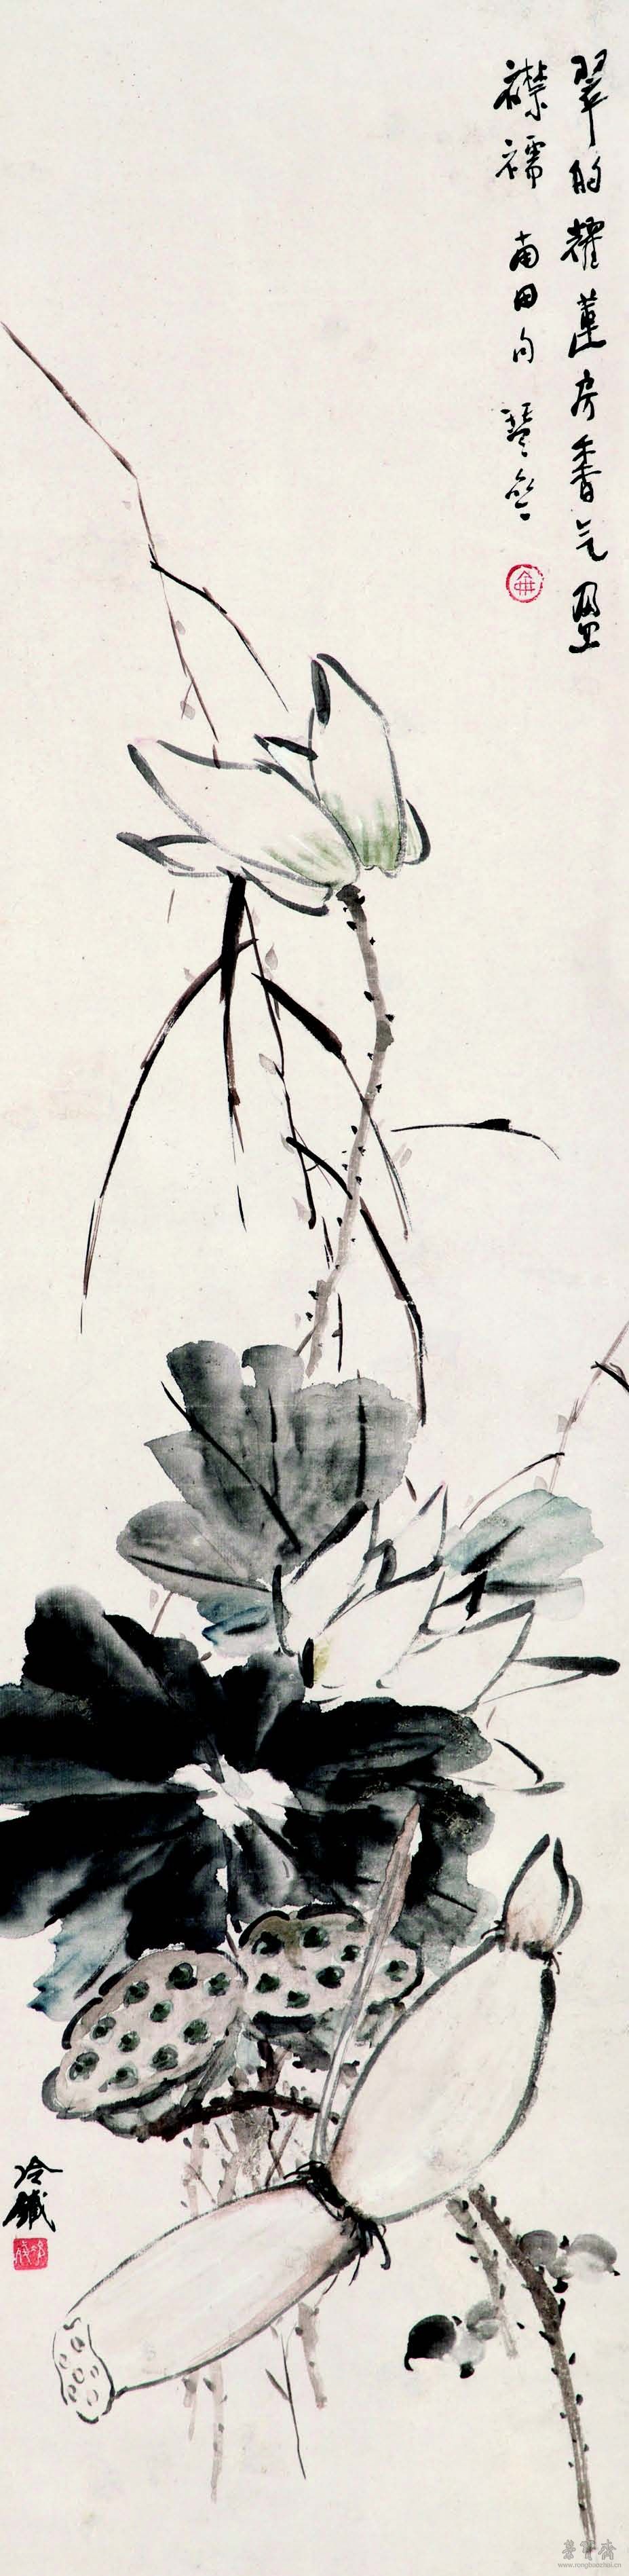 潘达微 荷花图 124cm×31cm 纸本设色 广东省博物馆藏